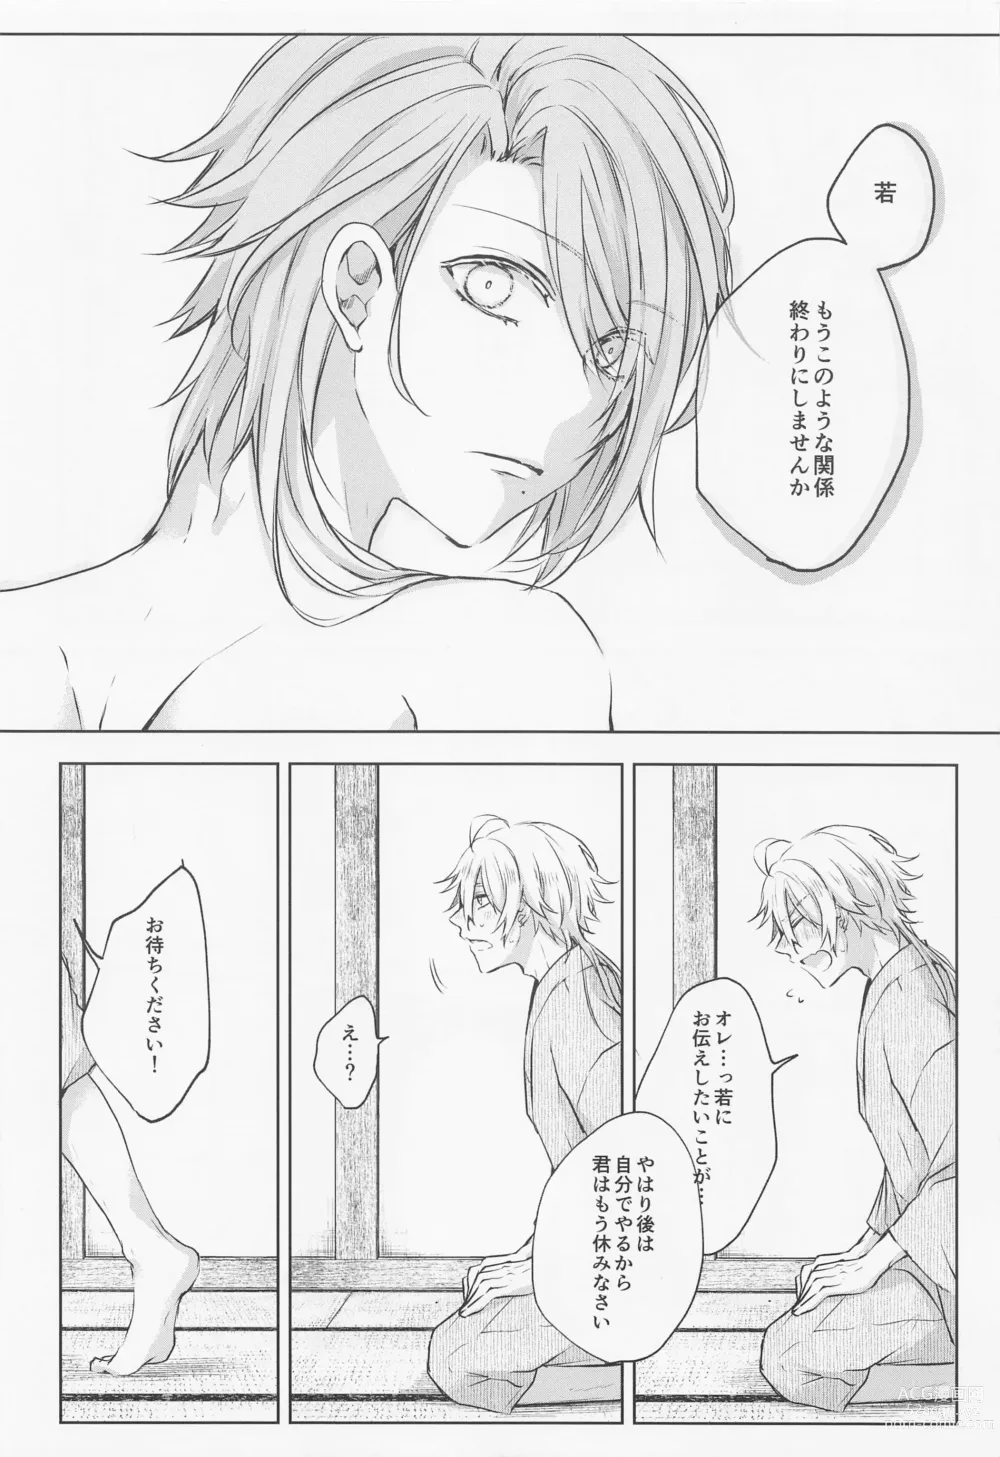 Page 7 of doujinshi Saredo, Kimi ni Sosogu Kingyo no Hanabira